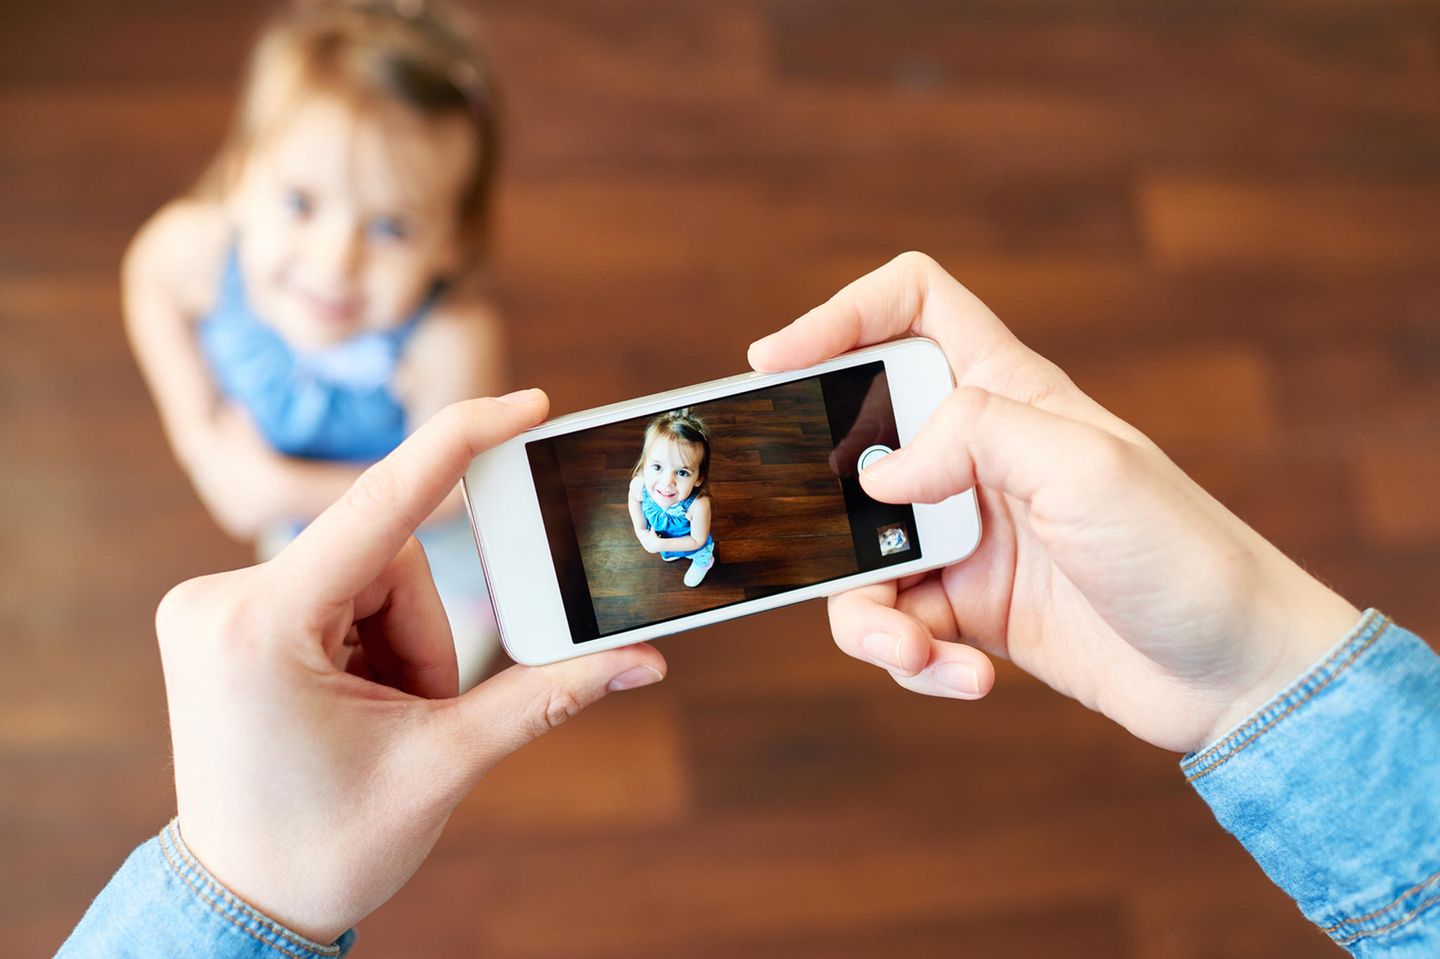 Kind wird mit Smartphone fotografiert